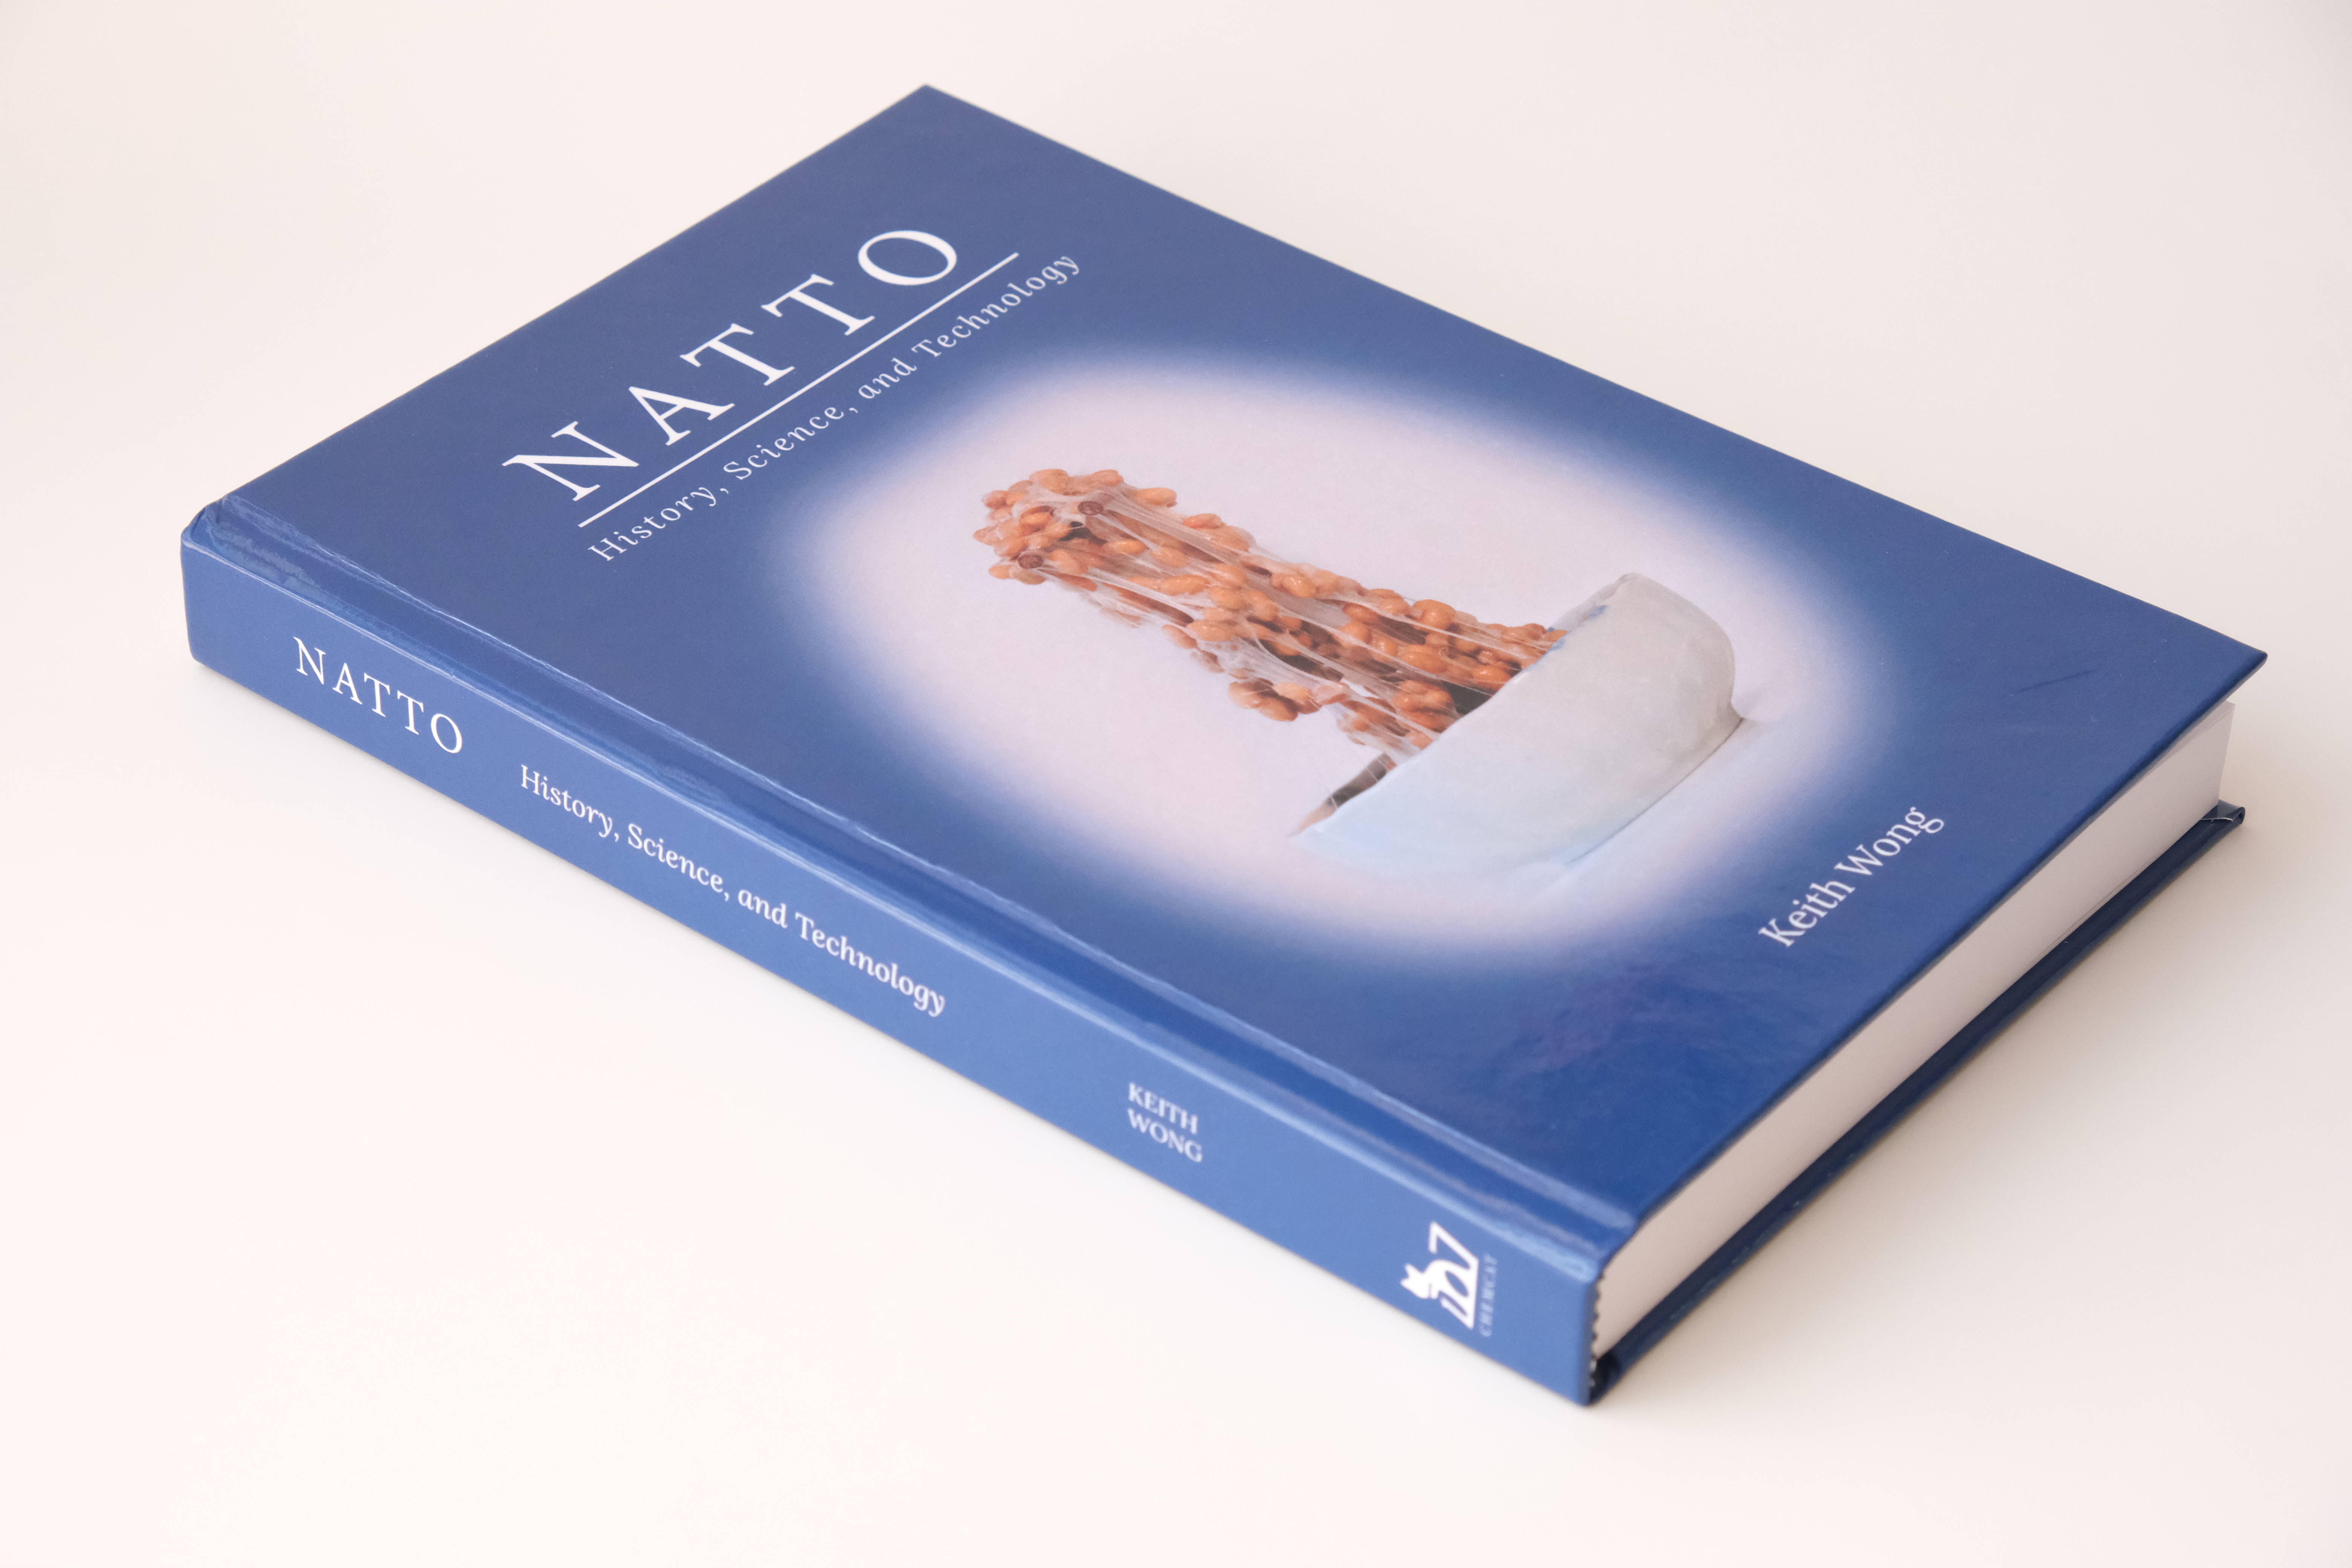 I wrote a book on Natto 